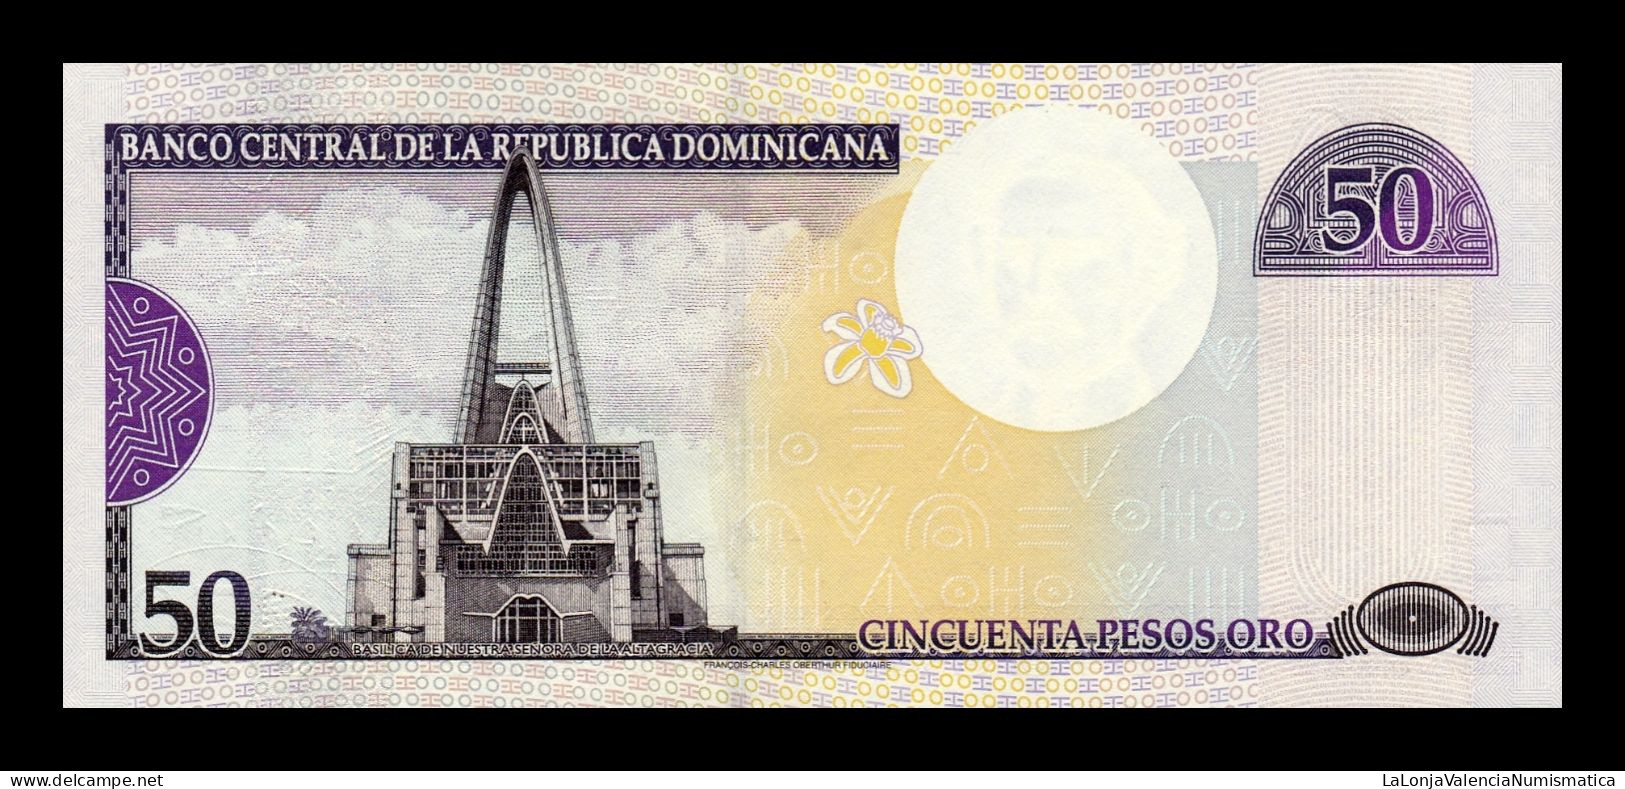 República Dominicana 50 Pesos Oro 2000 Pick 161 Low Serial 13 Sc Unc - Dominicaine